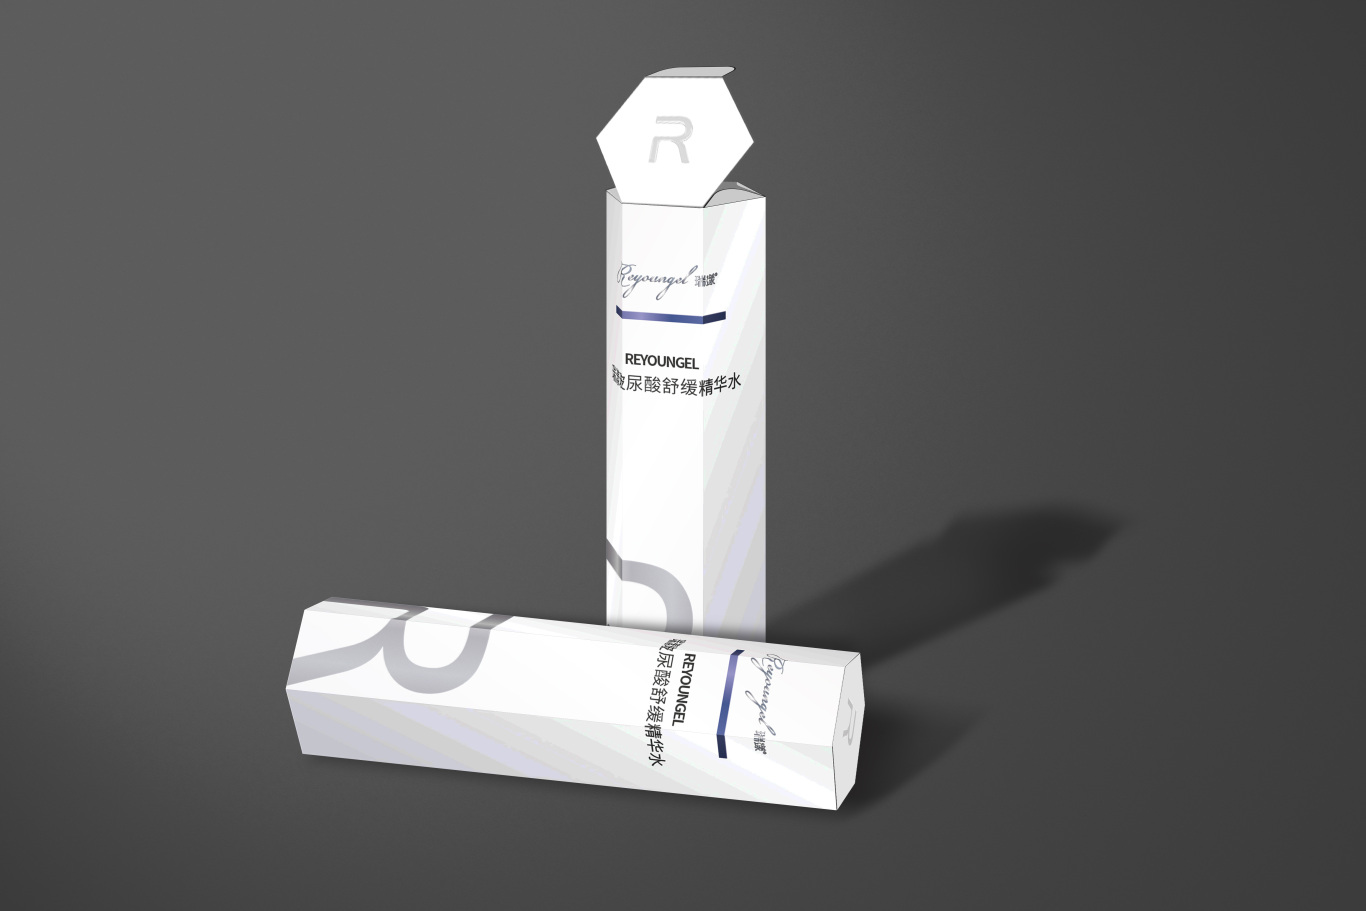 瑞漾玻尿酸精华水的包装设计项目图15